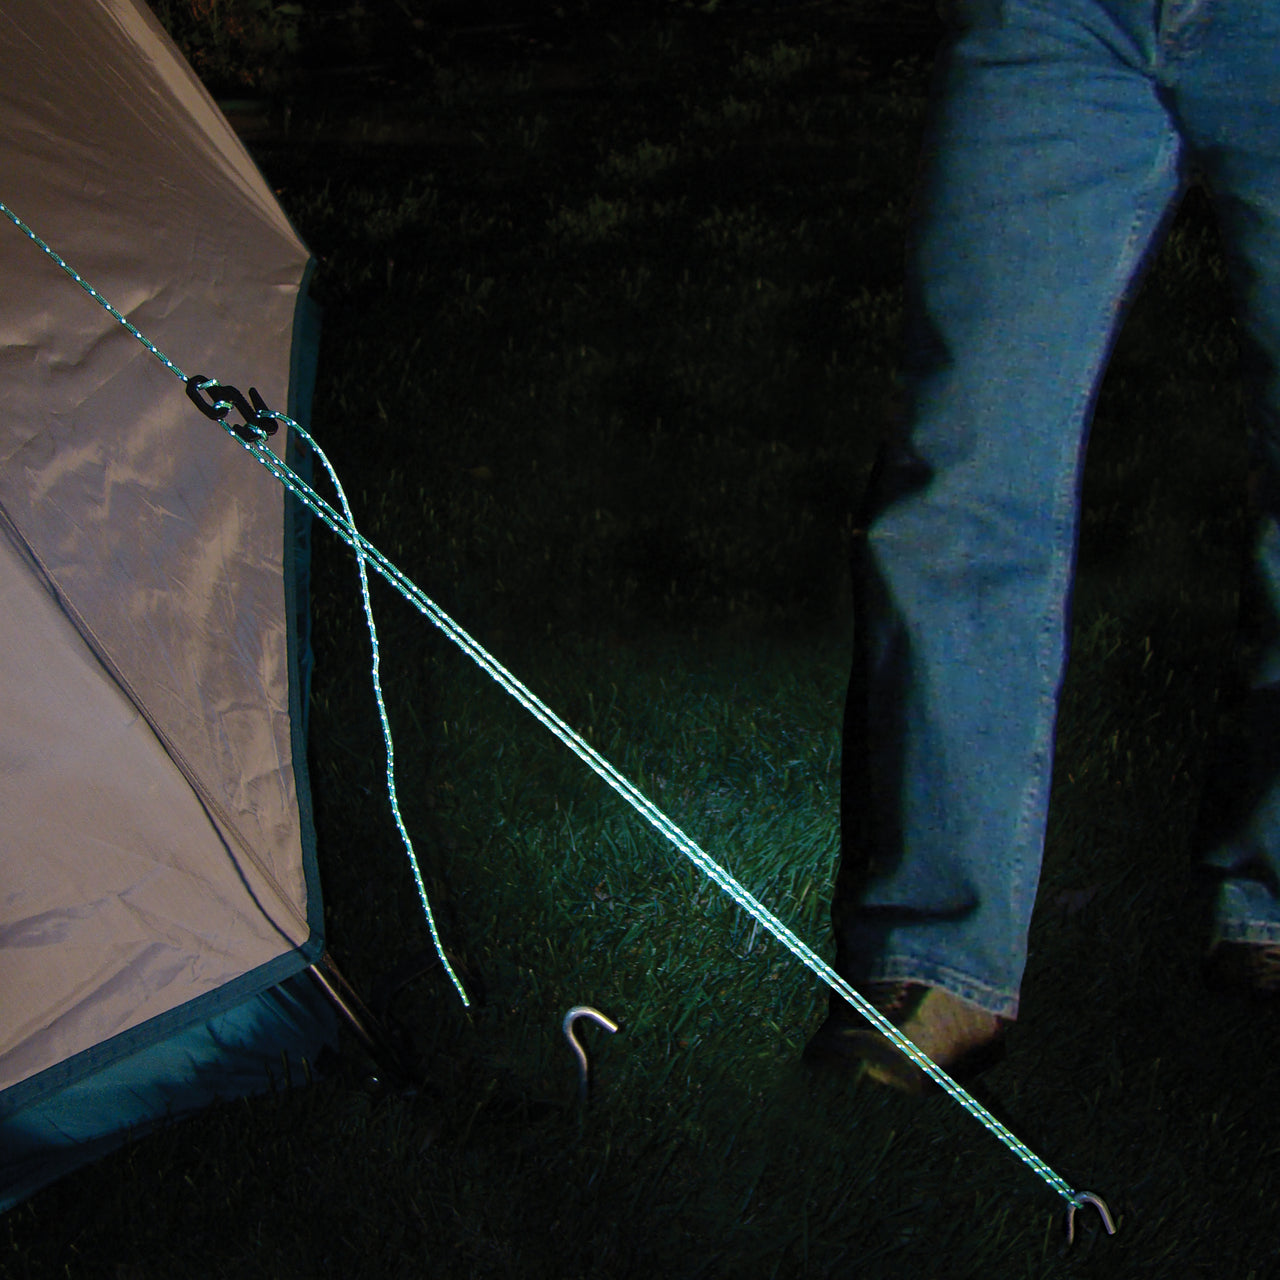 Figure 9® Tent Line Kit